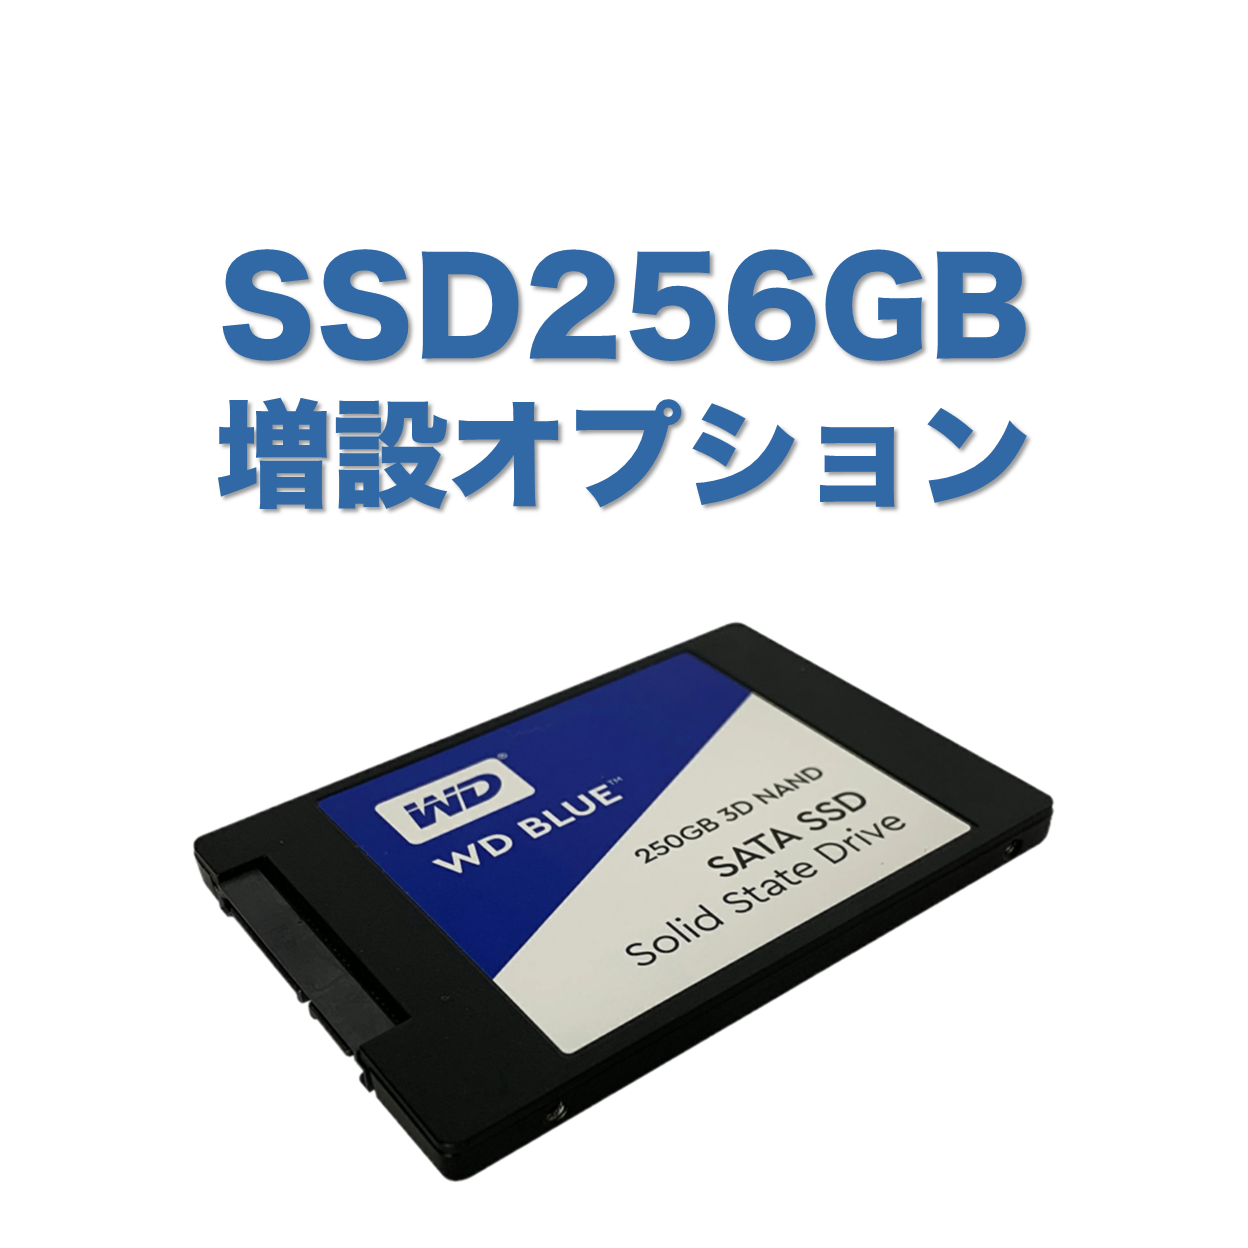 【追加オプション】SSD 256GB へ 増設 SSD128GB から SSD256GB へ増設します PC本体と同時購入のみ可能です